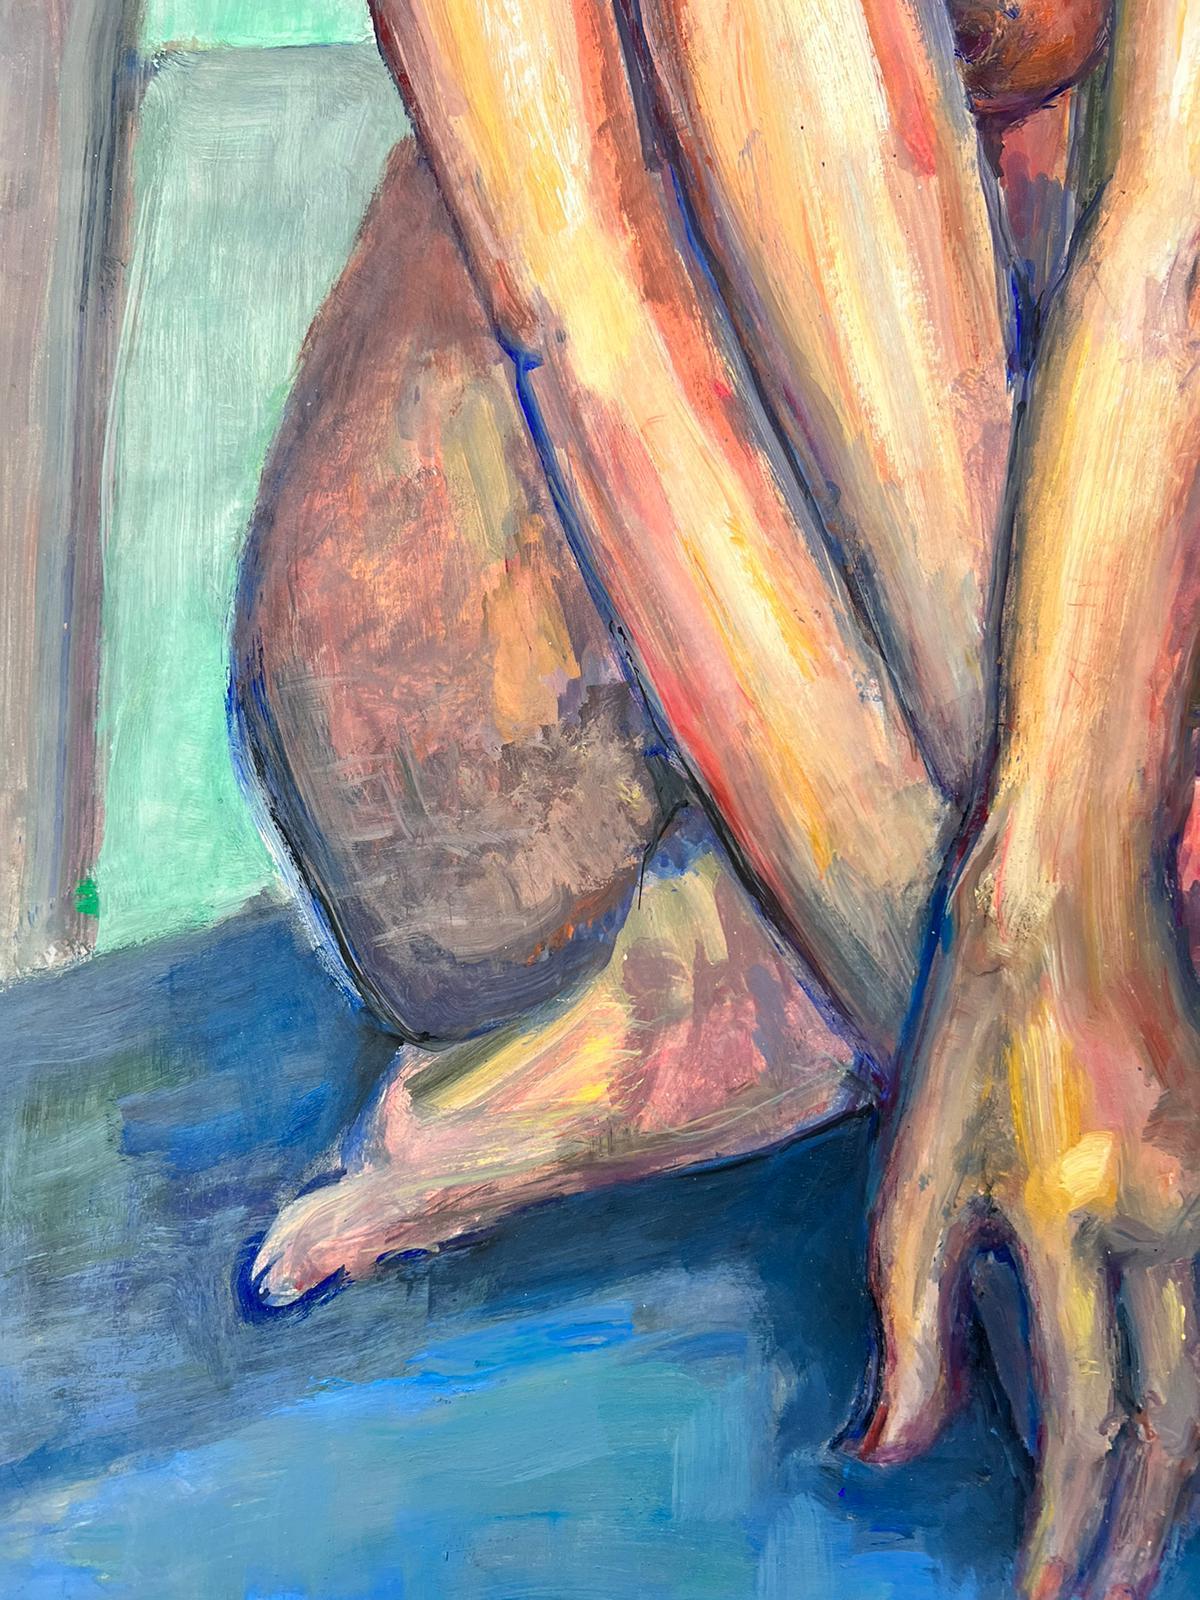 Le modèle Artistics
Portrait d'une femme nue allongée
École française, vers 1970
signé indistinctement 
peinture à l'huile sur carton, non encadrée
taille : 25 x 18 pouces
état : globalement très bon, quelques légères marques à la surface mais rien